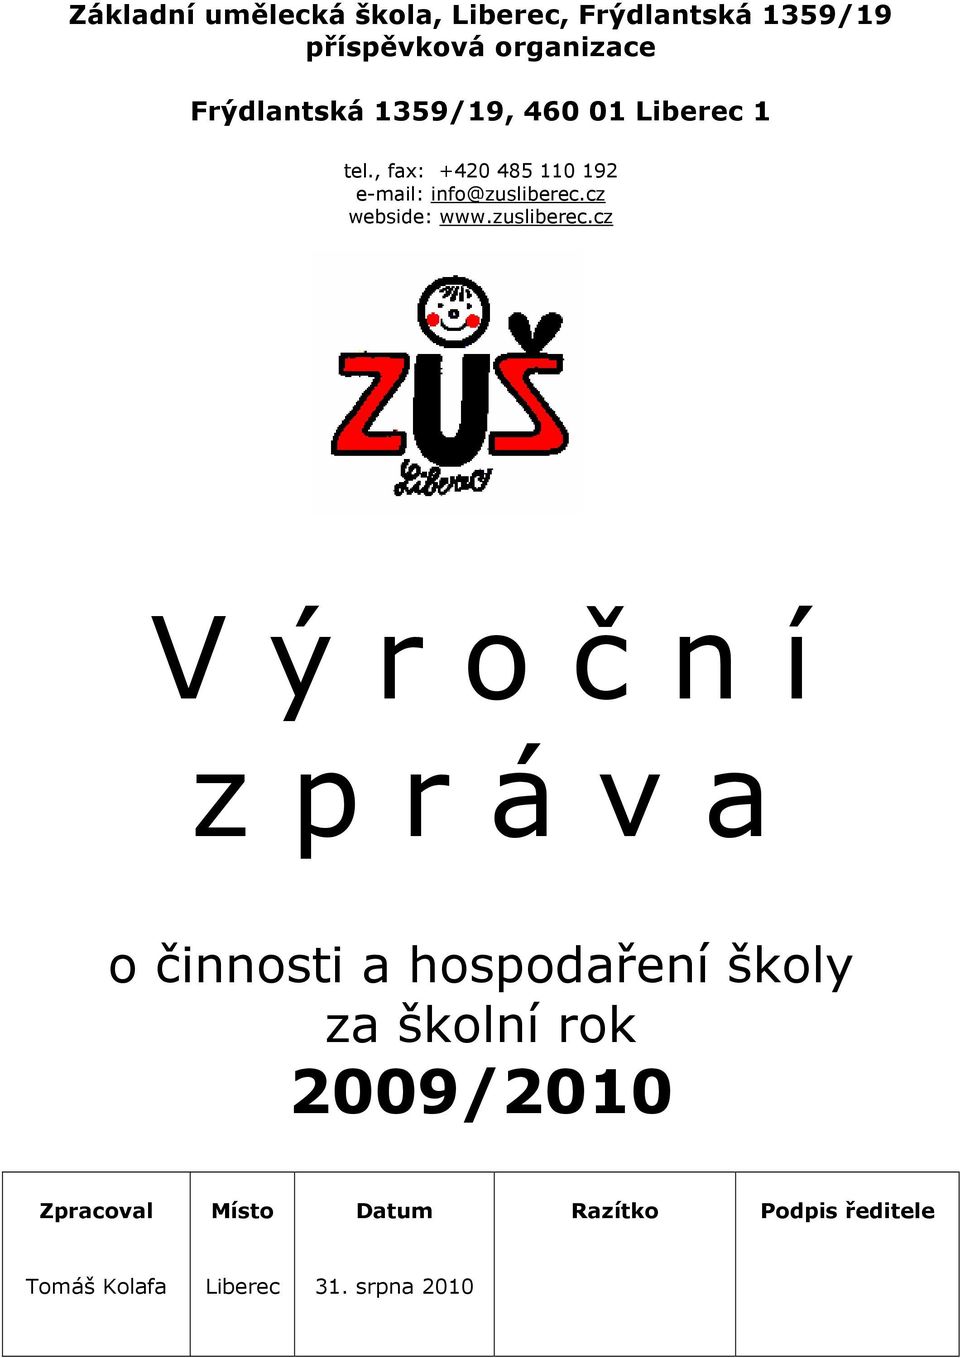 cz webside: www.zusliberec.